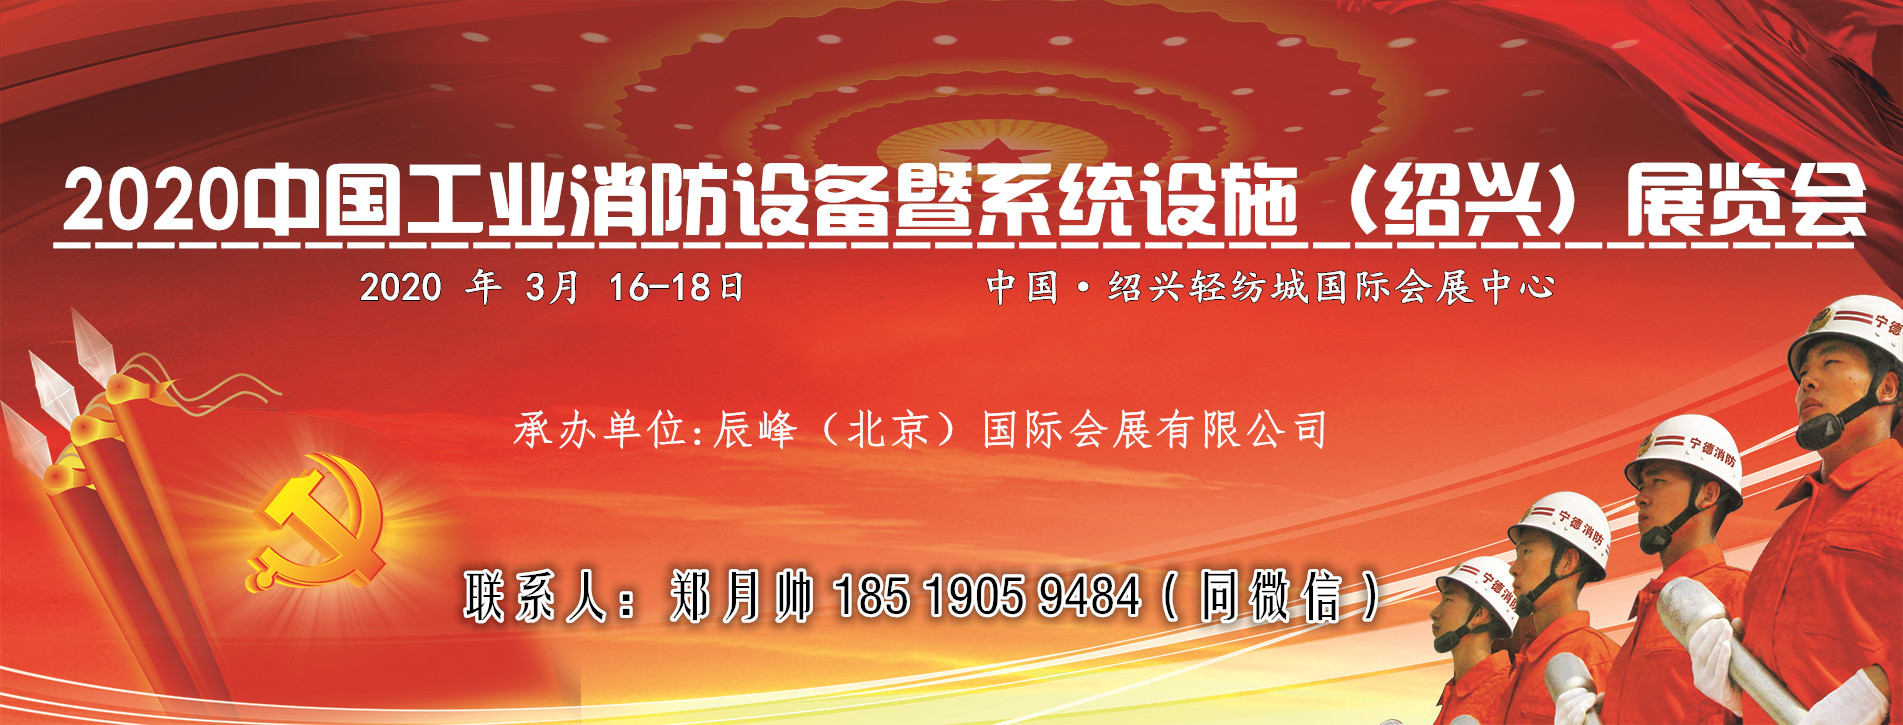 2020浙江消防展